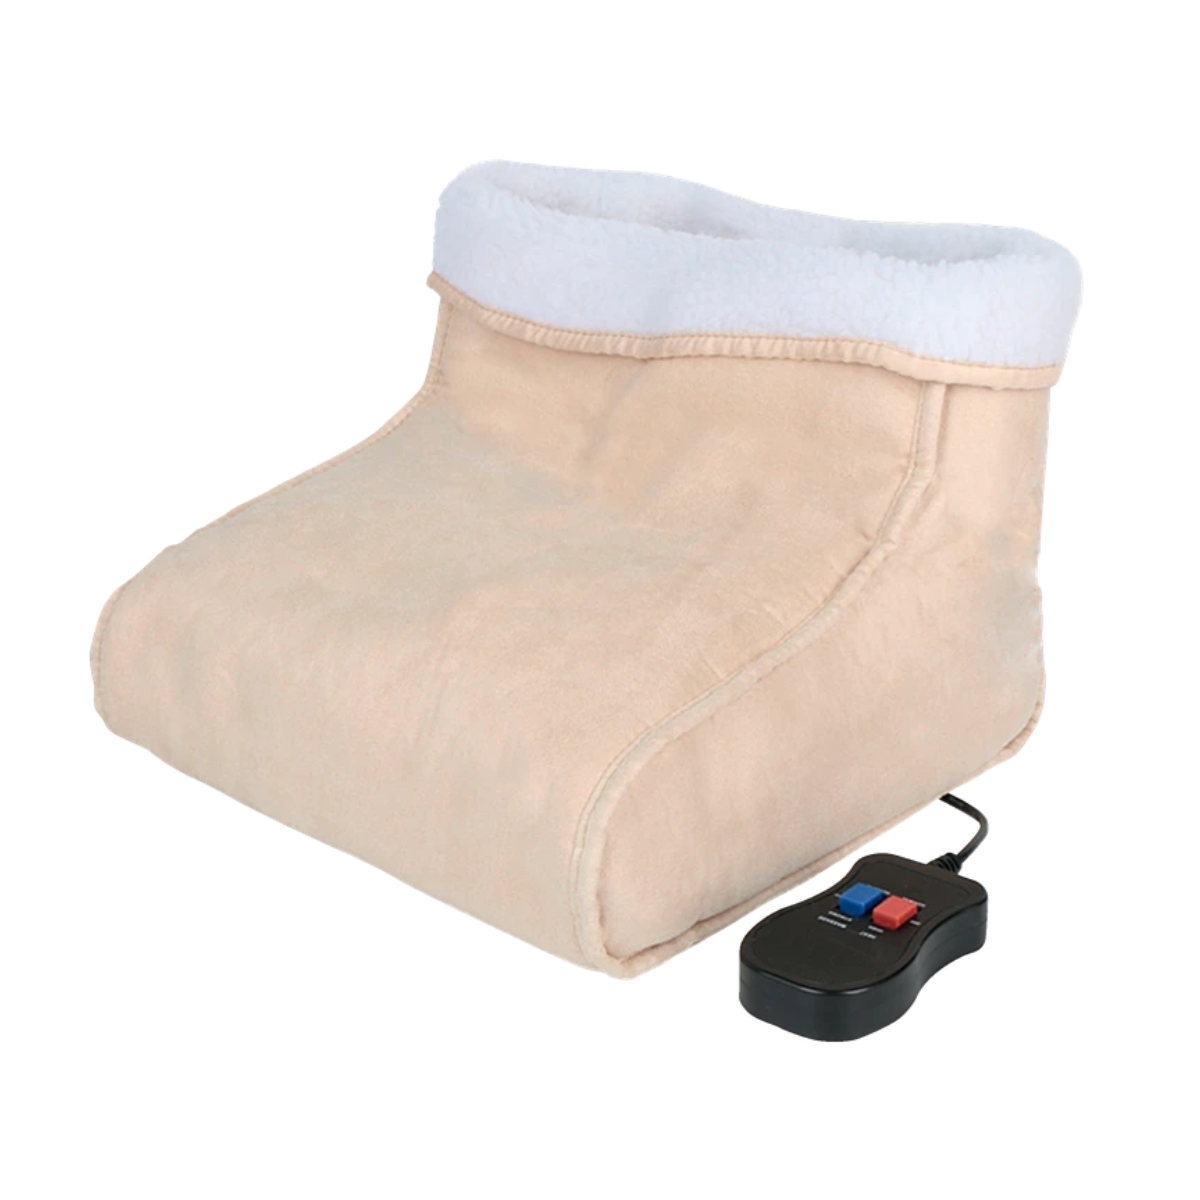 Brug NORDIC Foot warmer & massager til en forbedret oplevelse